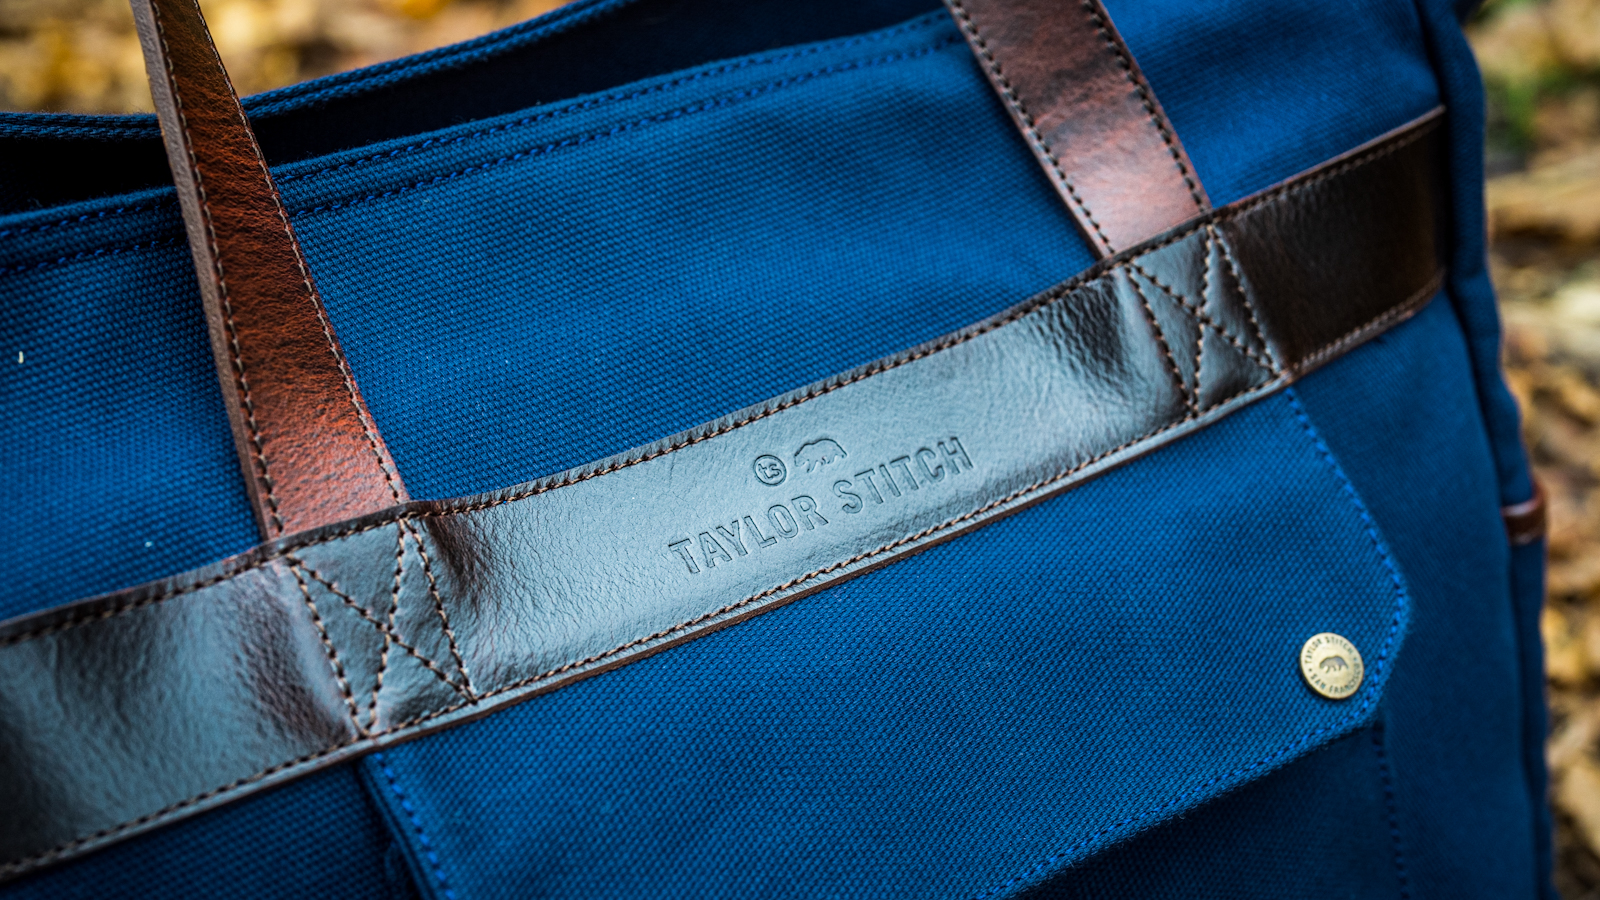 Taylor Stitch Utility Bag